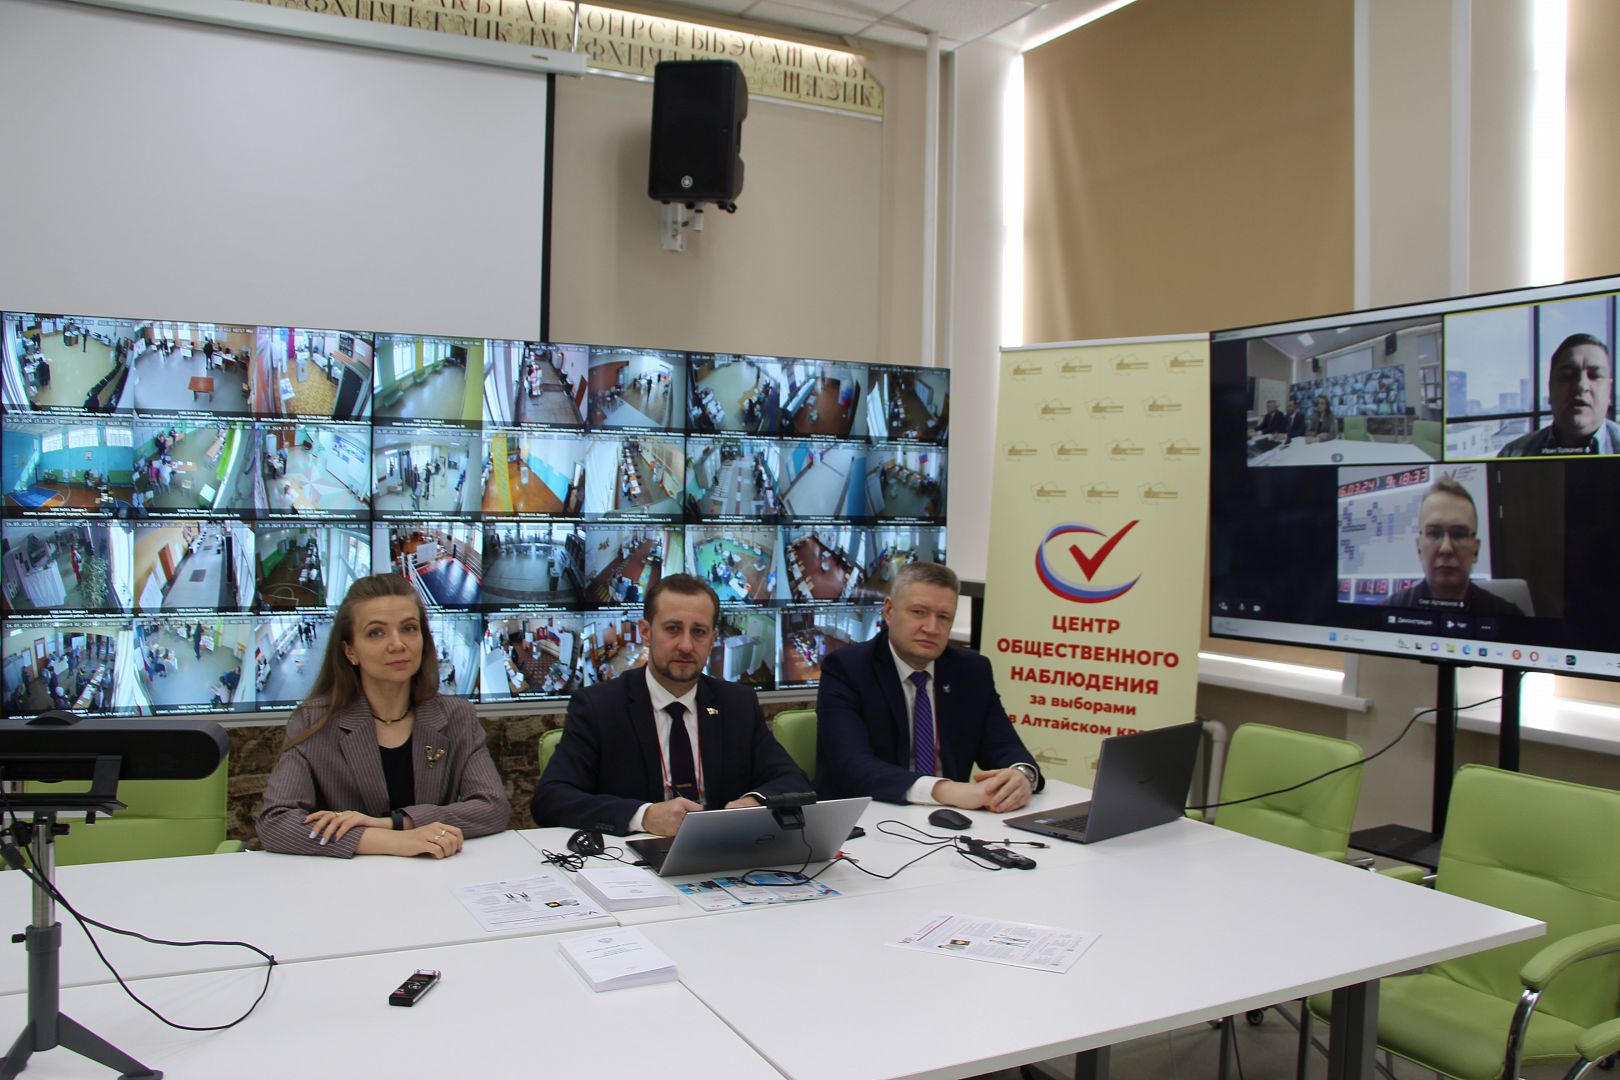 Директор ИМИТ АлтГУ принял участие в работе Центра общественного наблюдения за выборами при Общественной палате Алтайского края